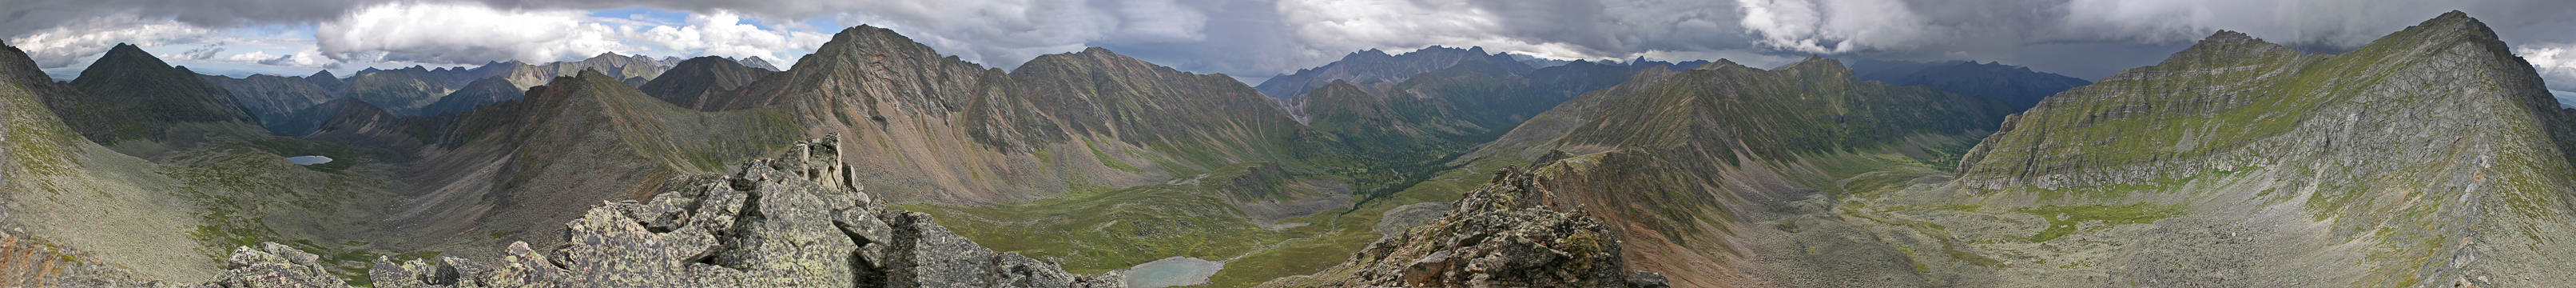 Панорама долин рек Белокопытки, Федюшки и Хабарая